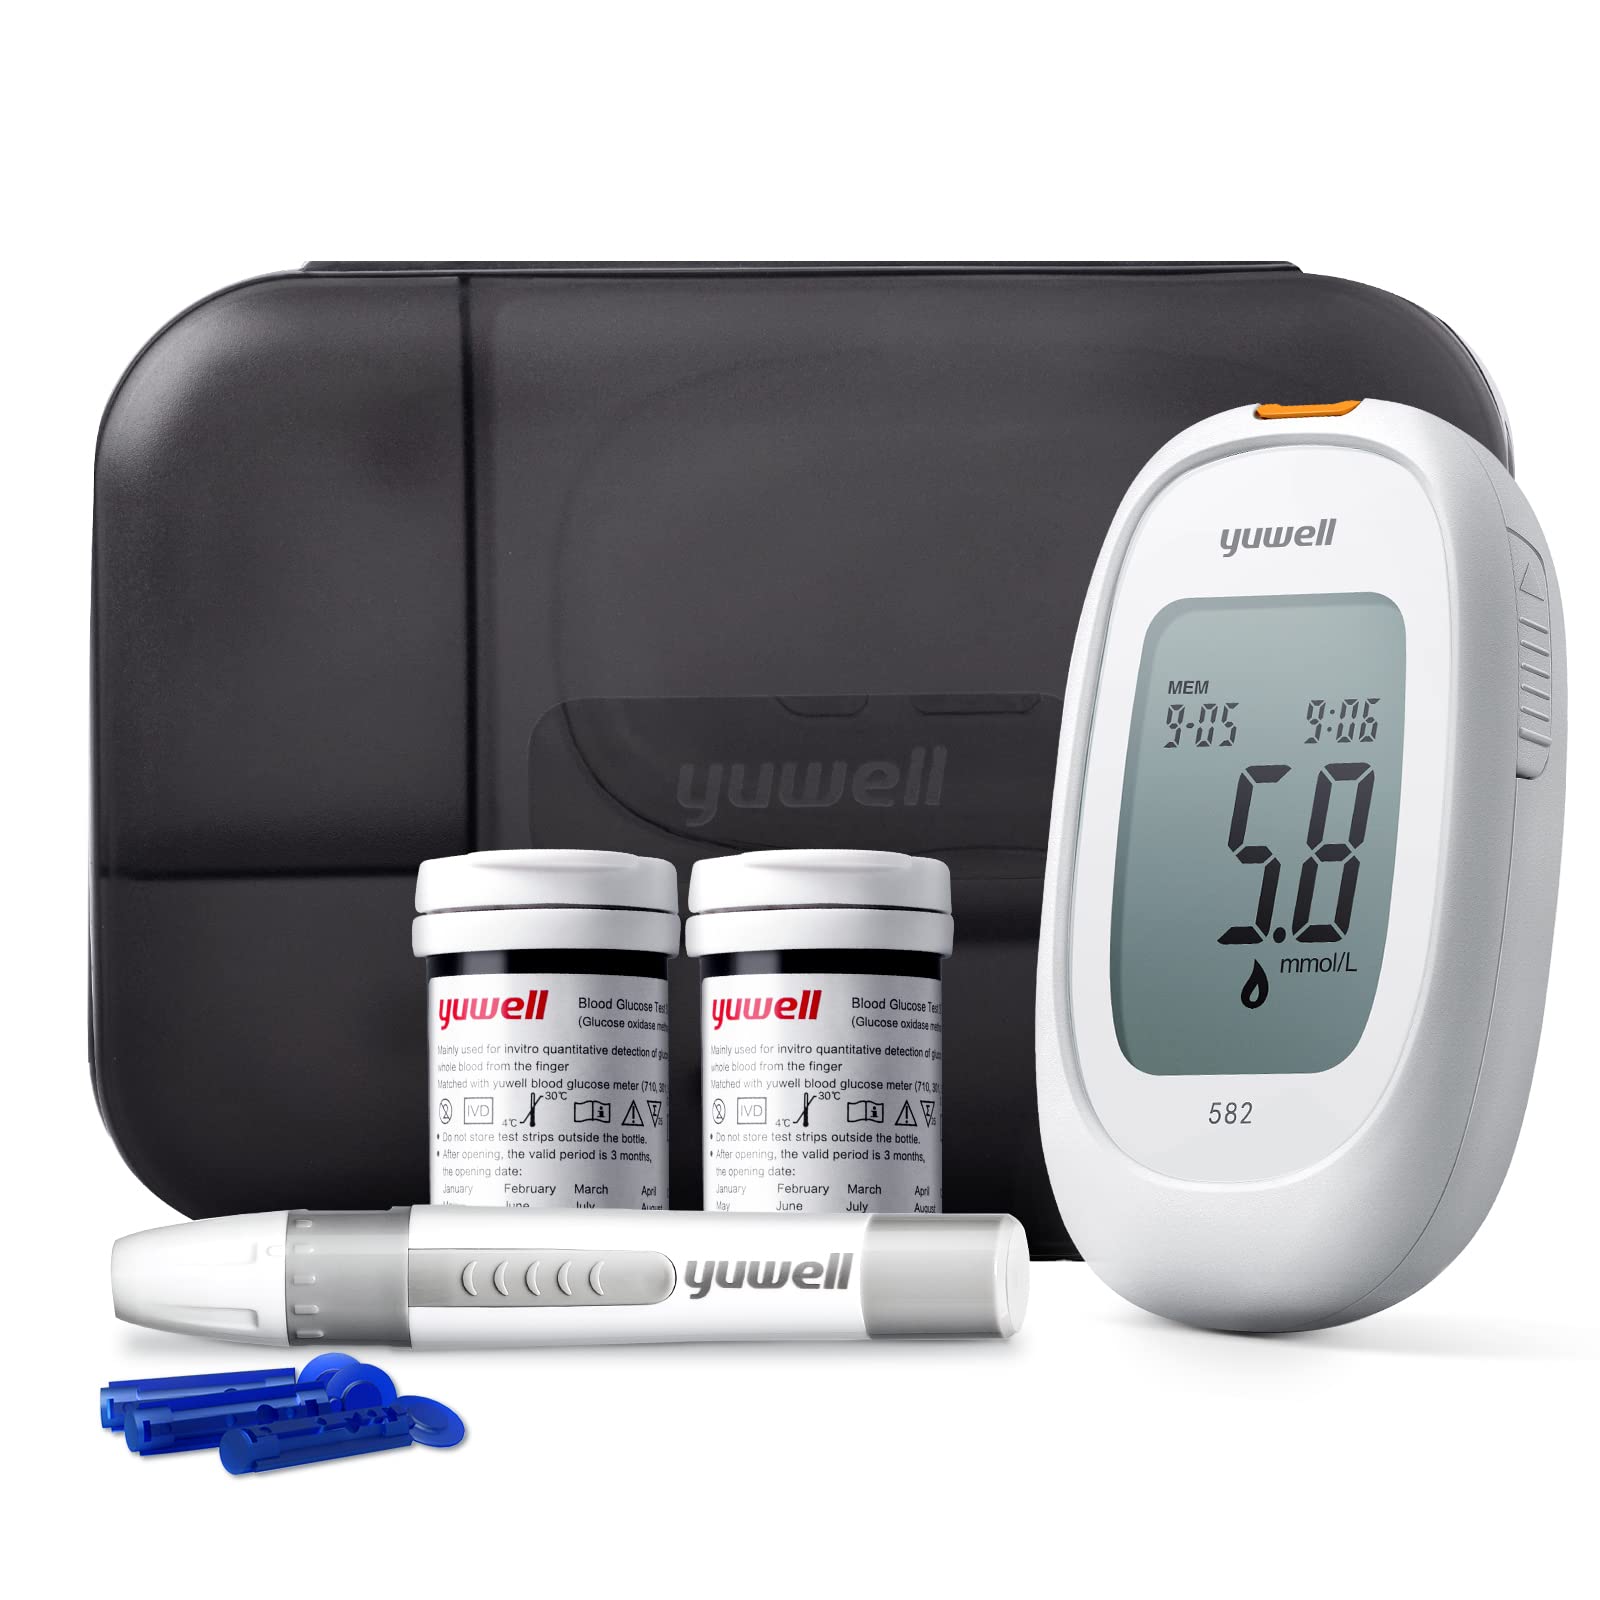 yuwell Blutzuckermessgerät Set mit Teststreifen x 50 und Lanzetten x 50, Diabetes Test ideal für den Heimgebrauch, Zuckermessgerät zur Selbstkontrolle des Blutzuckers bei Diabetes (Modell 582)